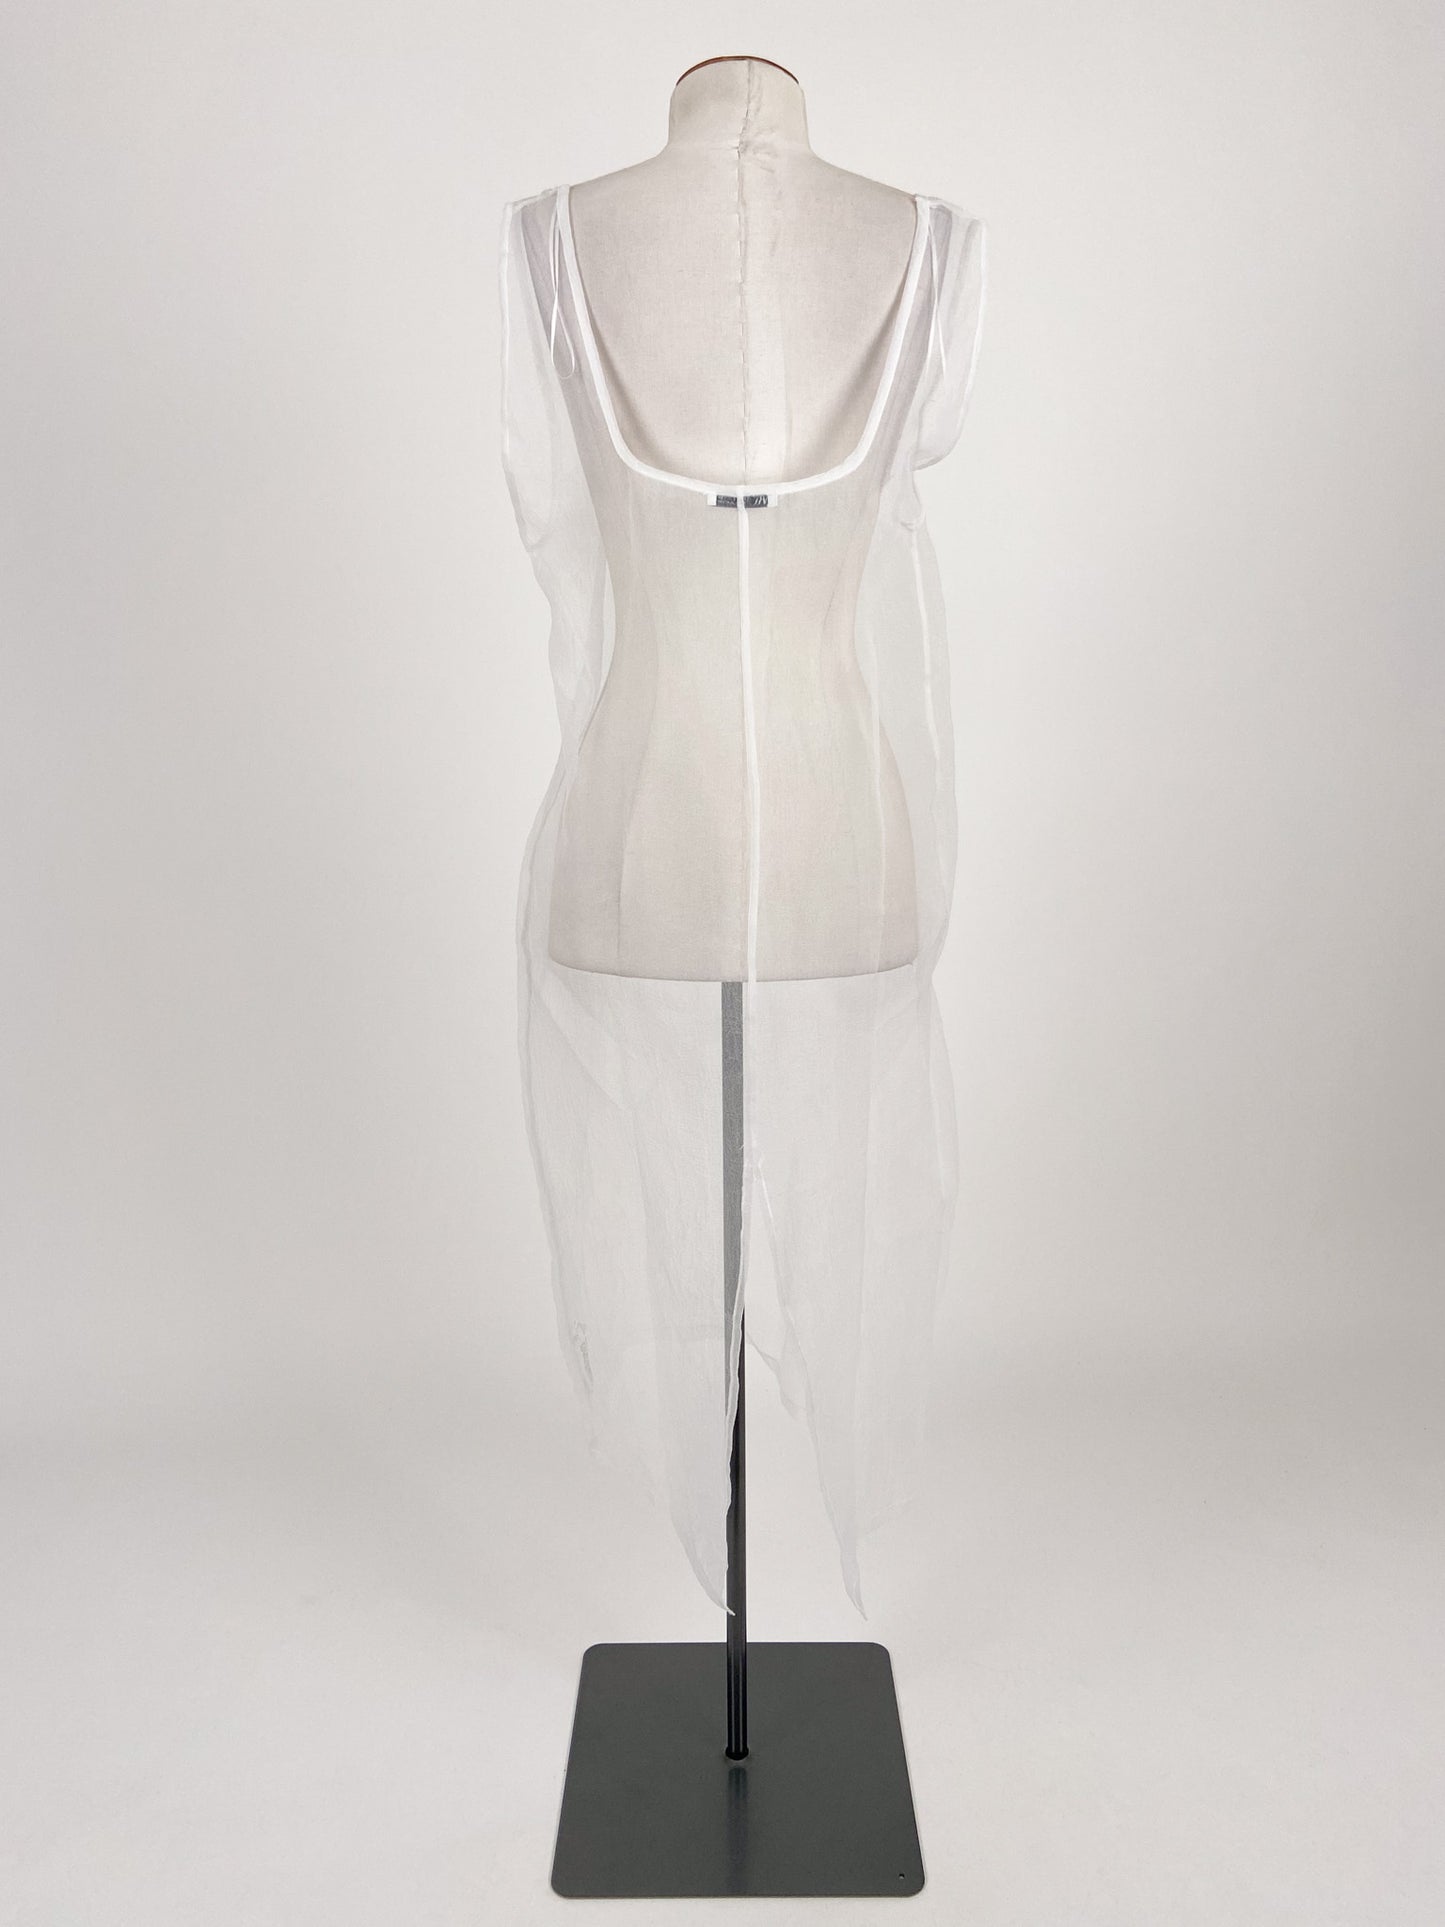 Zara | White Casual Dress | Size S